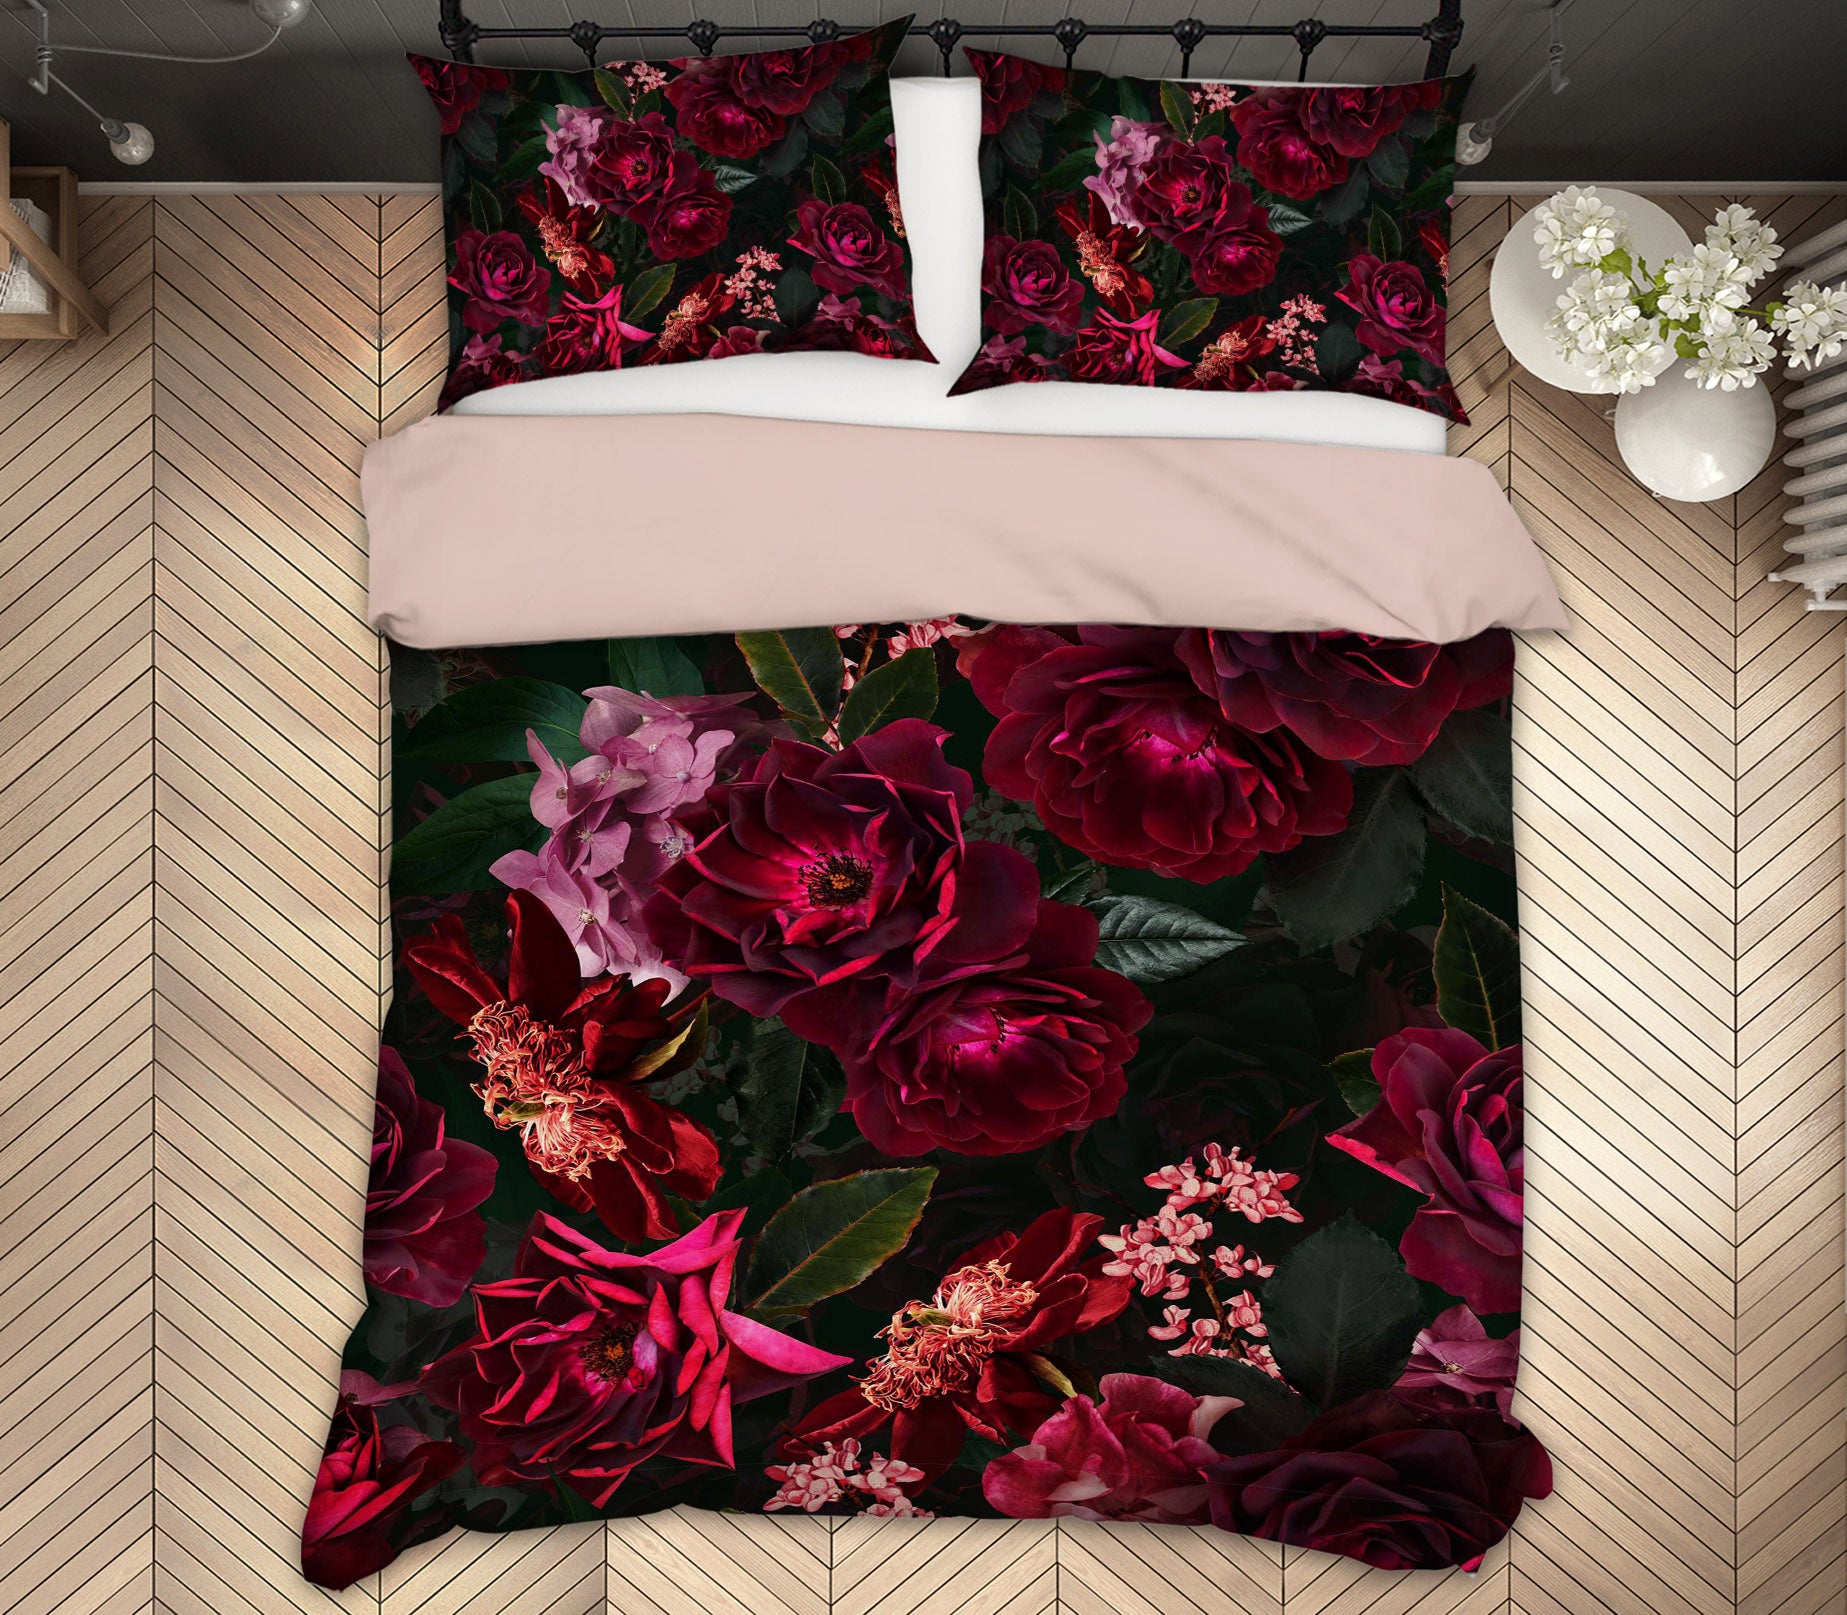 3D Flower Growth 151 Uta Naumann Bedding Bed Pillowcases Quilt